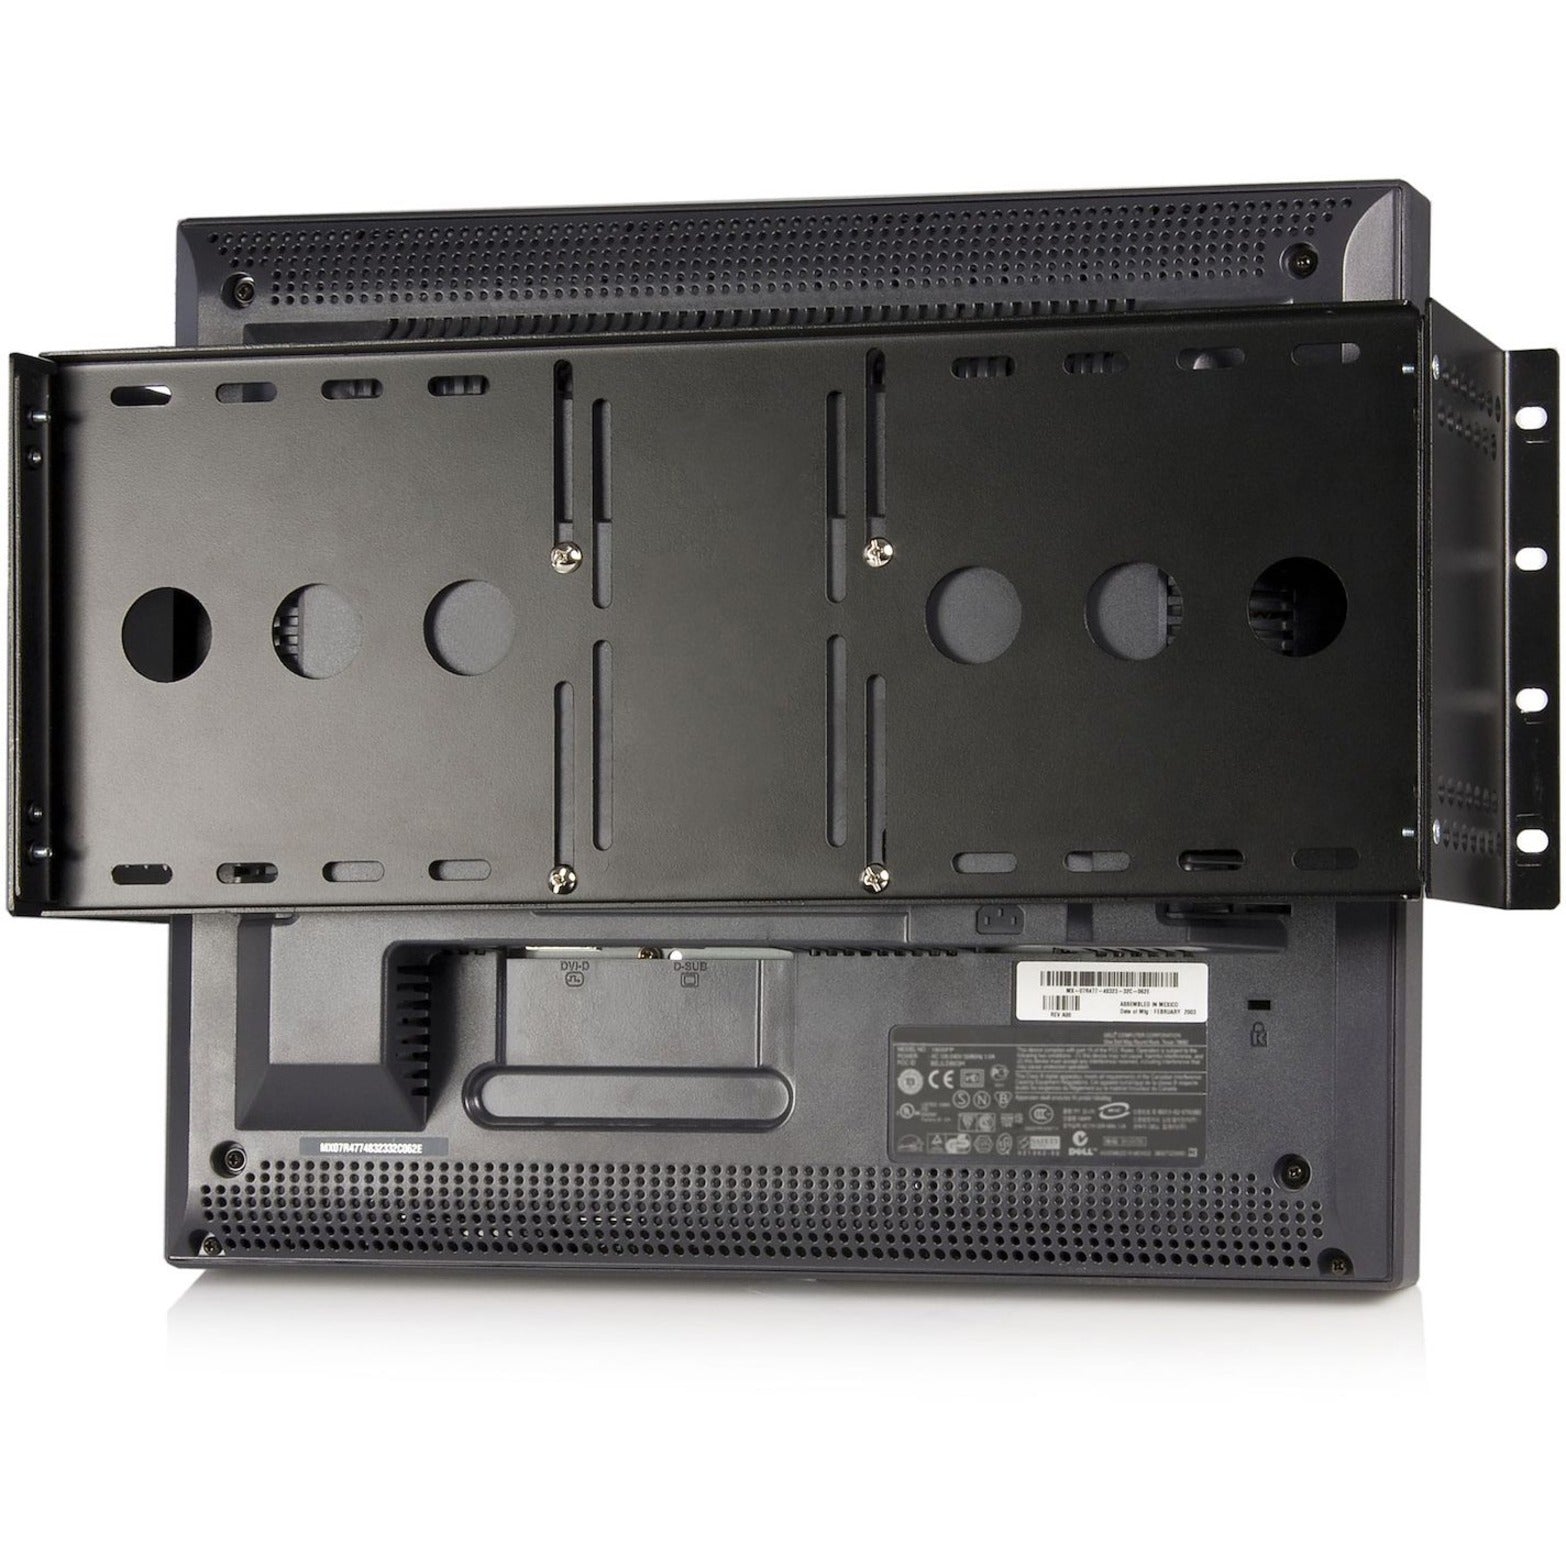 StarTech.com RKLCDBK Universal VESA Supporto di montaggio del monitor LCD per rack o armadietto da 19 pollici soluzione resistente e versatile.